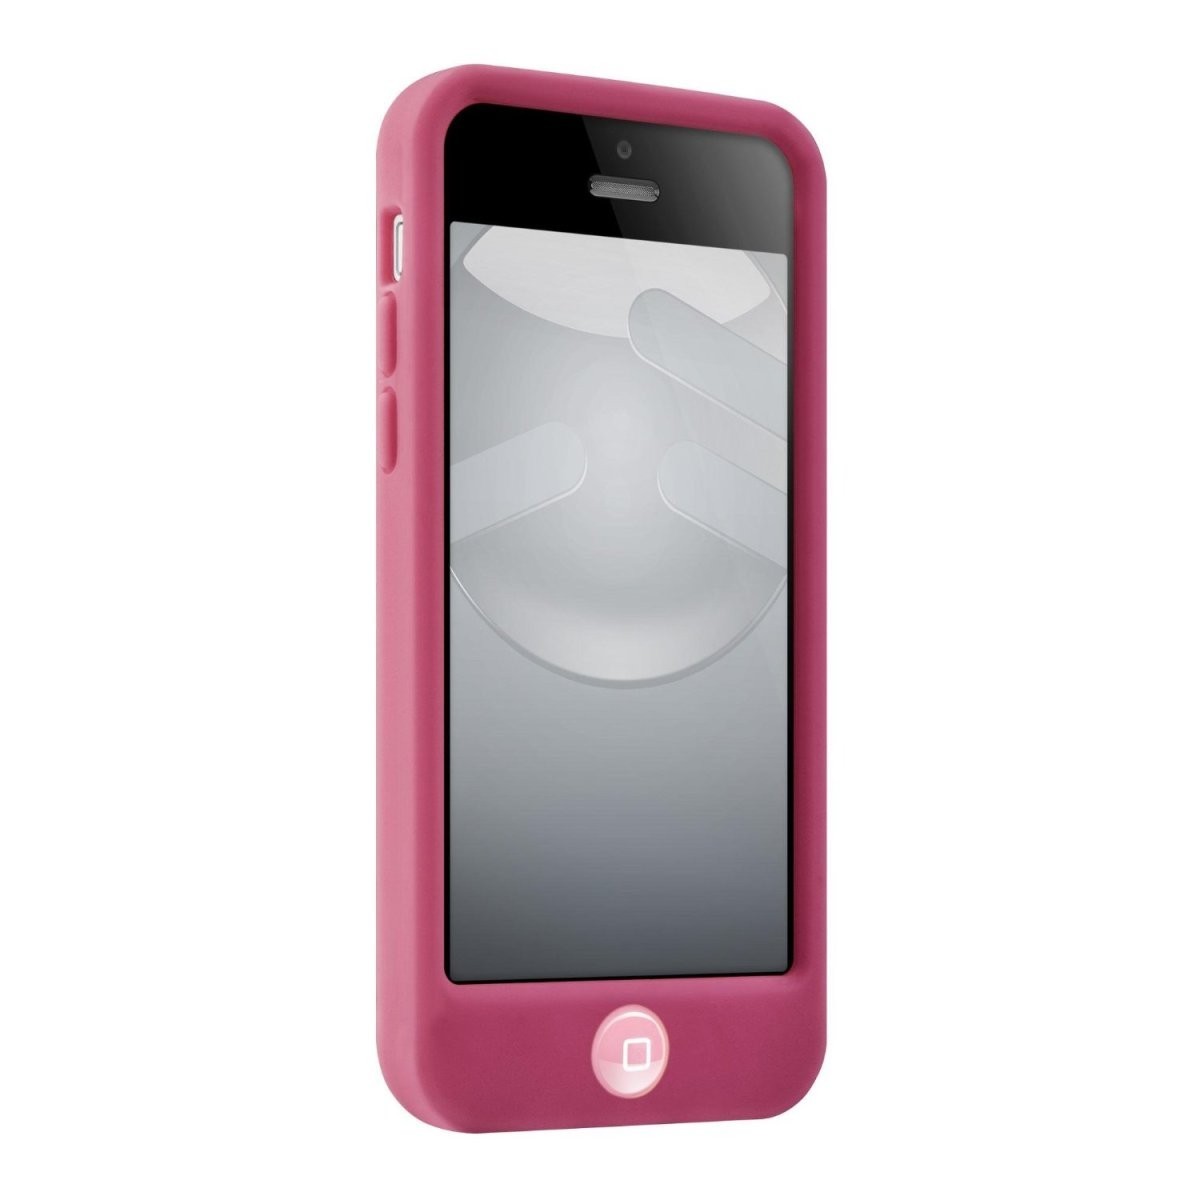 スマホケース カバー iPhone5c SwitchEasy ピンク レッド 赤 ジャケット シリコン イヤホンジャック 保護フィルム クロス_画像4